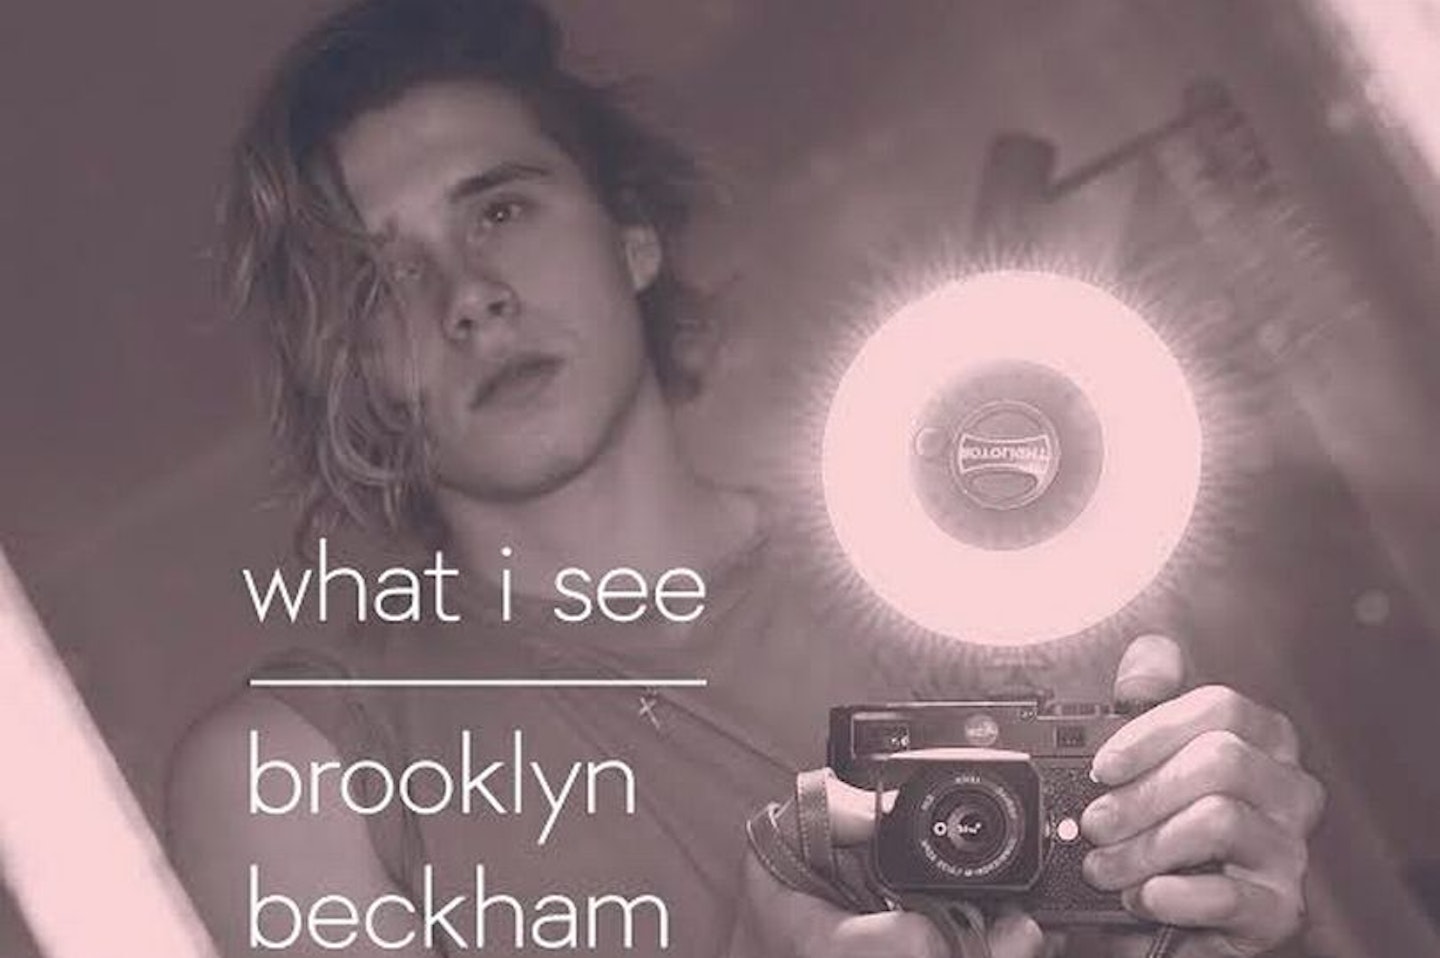 Brooklyn beckham book